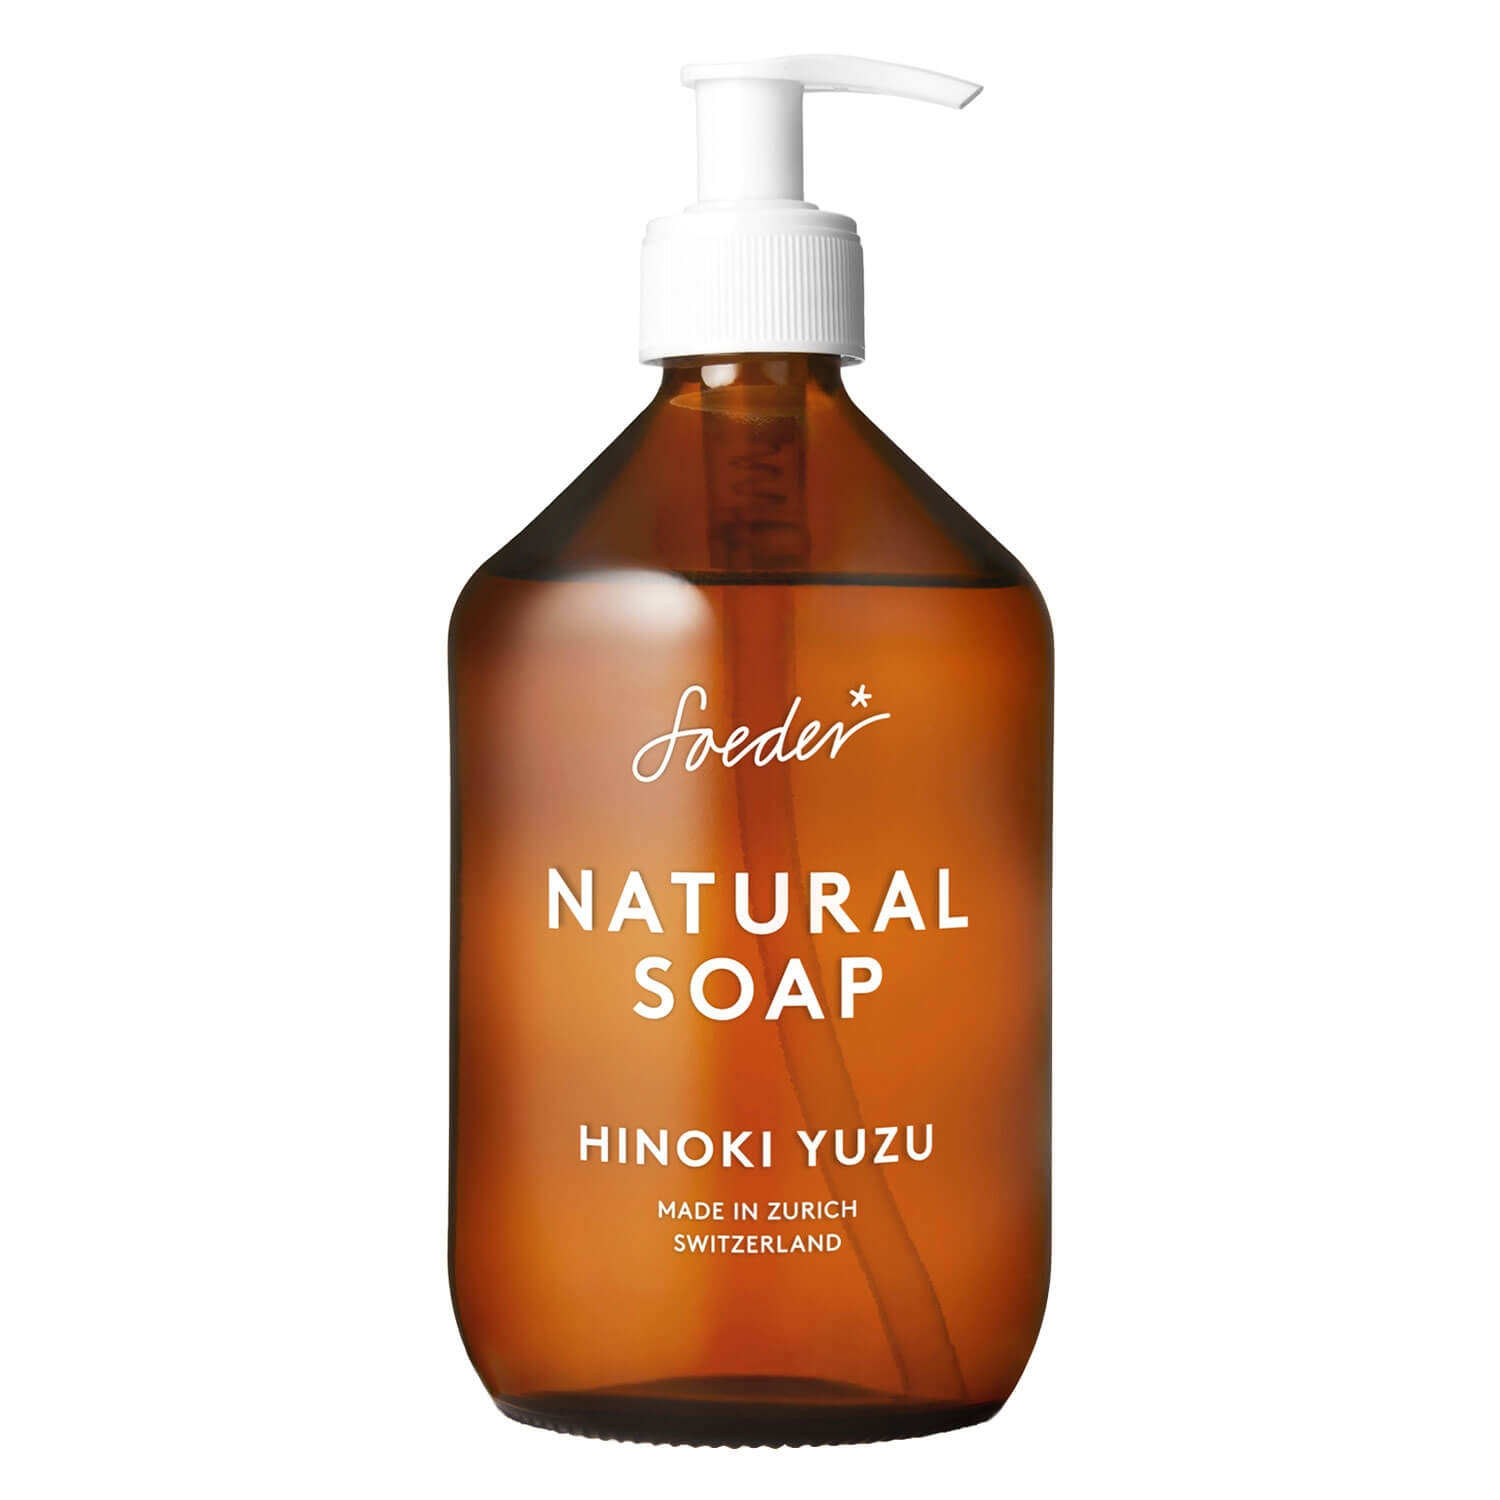 Produktbild von Soeder - Natural Soap Hinoki Yuzu